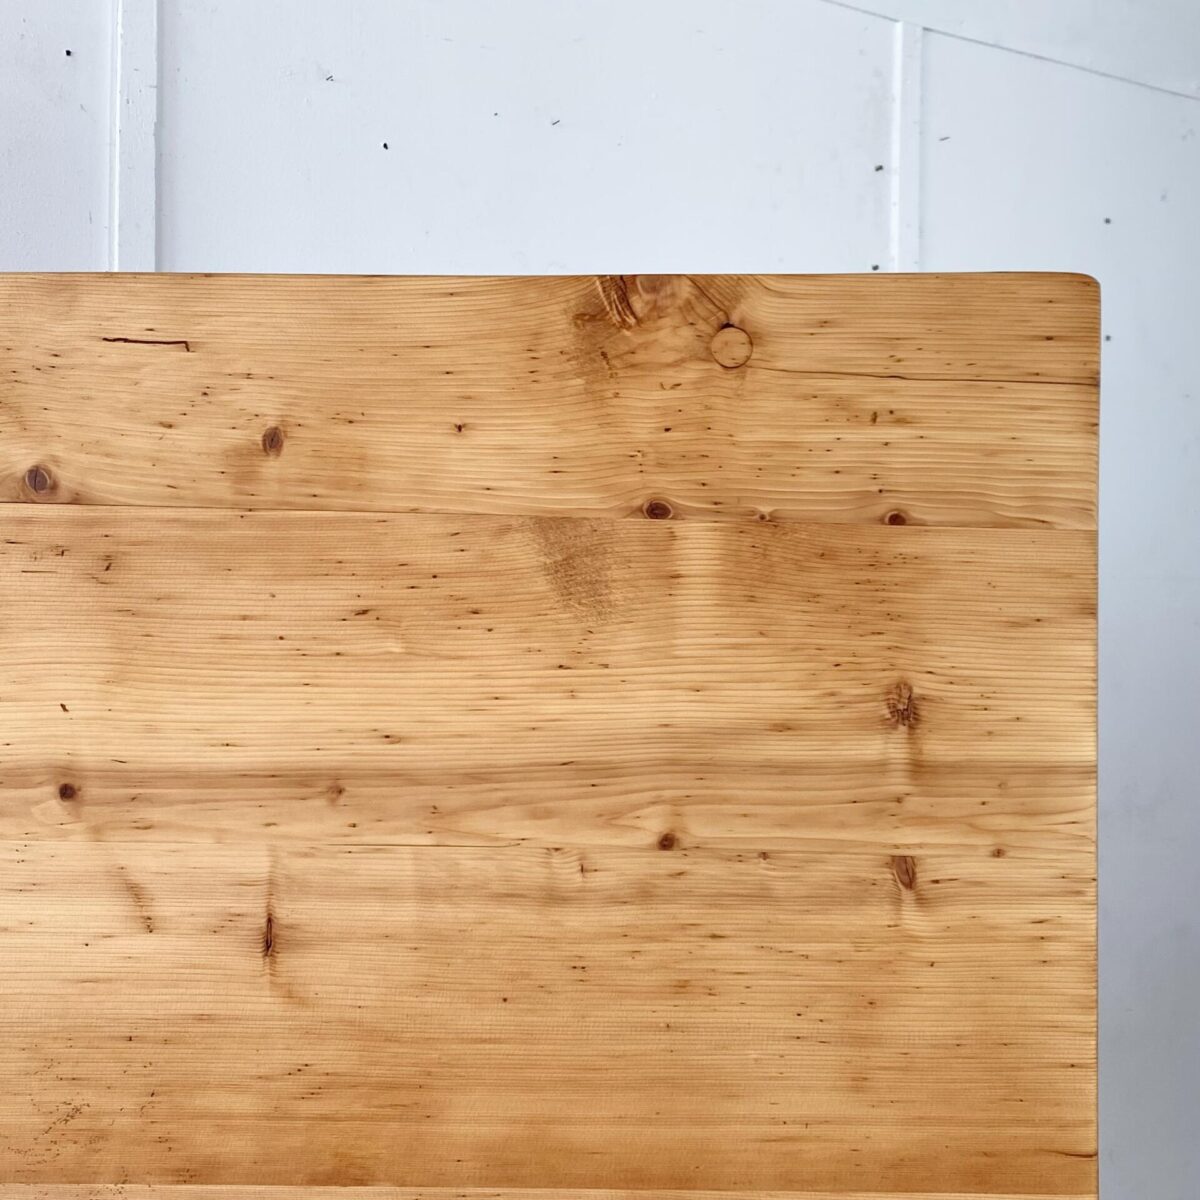 Deuxieme.shop alter Holztisch designklassiker, Biedermeiertisch aus Fichtenholz. 180x69cm Höhe 77cm. Der Tisch ist in restaurierten stabilen Zustand. Die Holz Oberflächen sind geschliffen und mit Naturöl behandelt. Es finden 6 bis 8 Personen daran Platz.